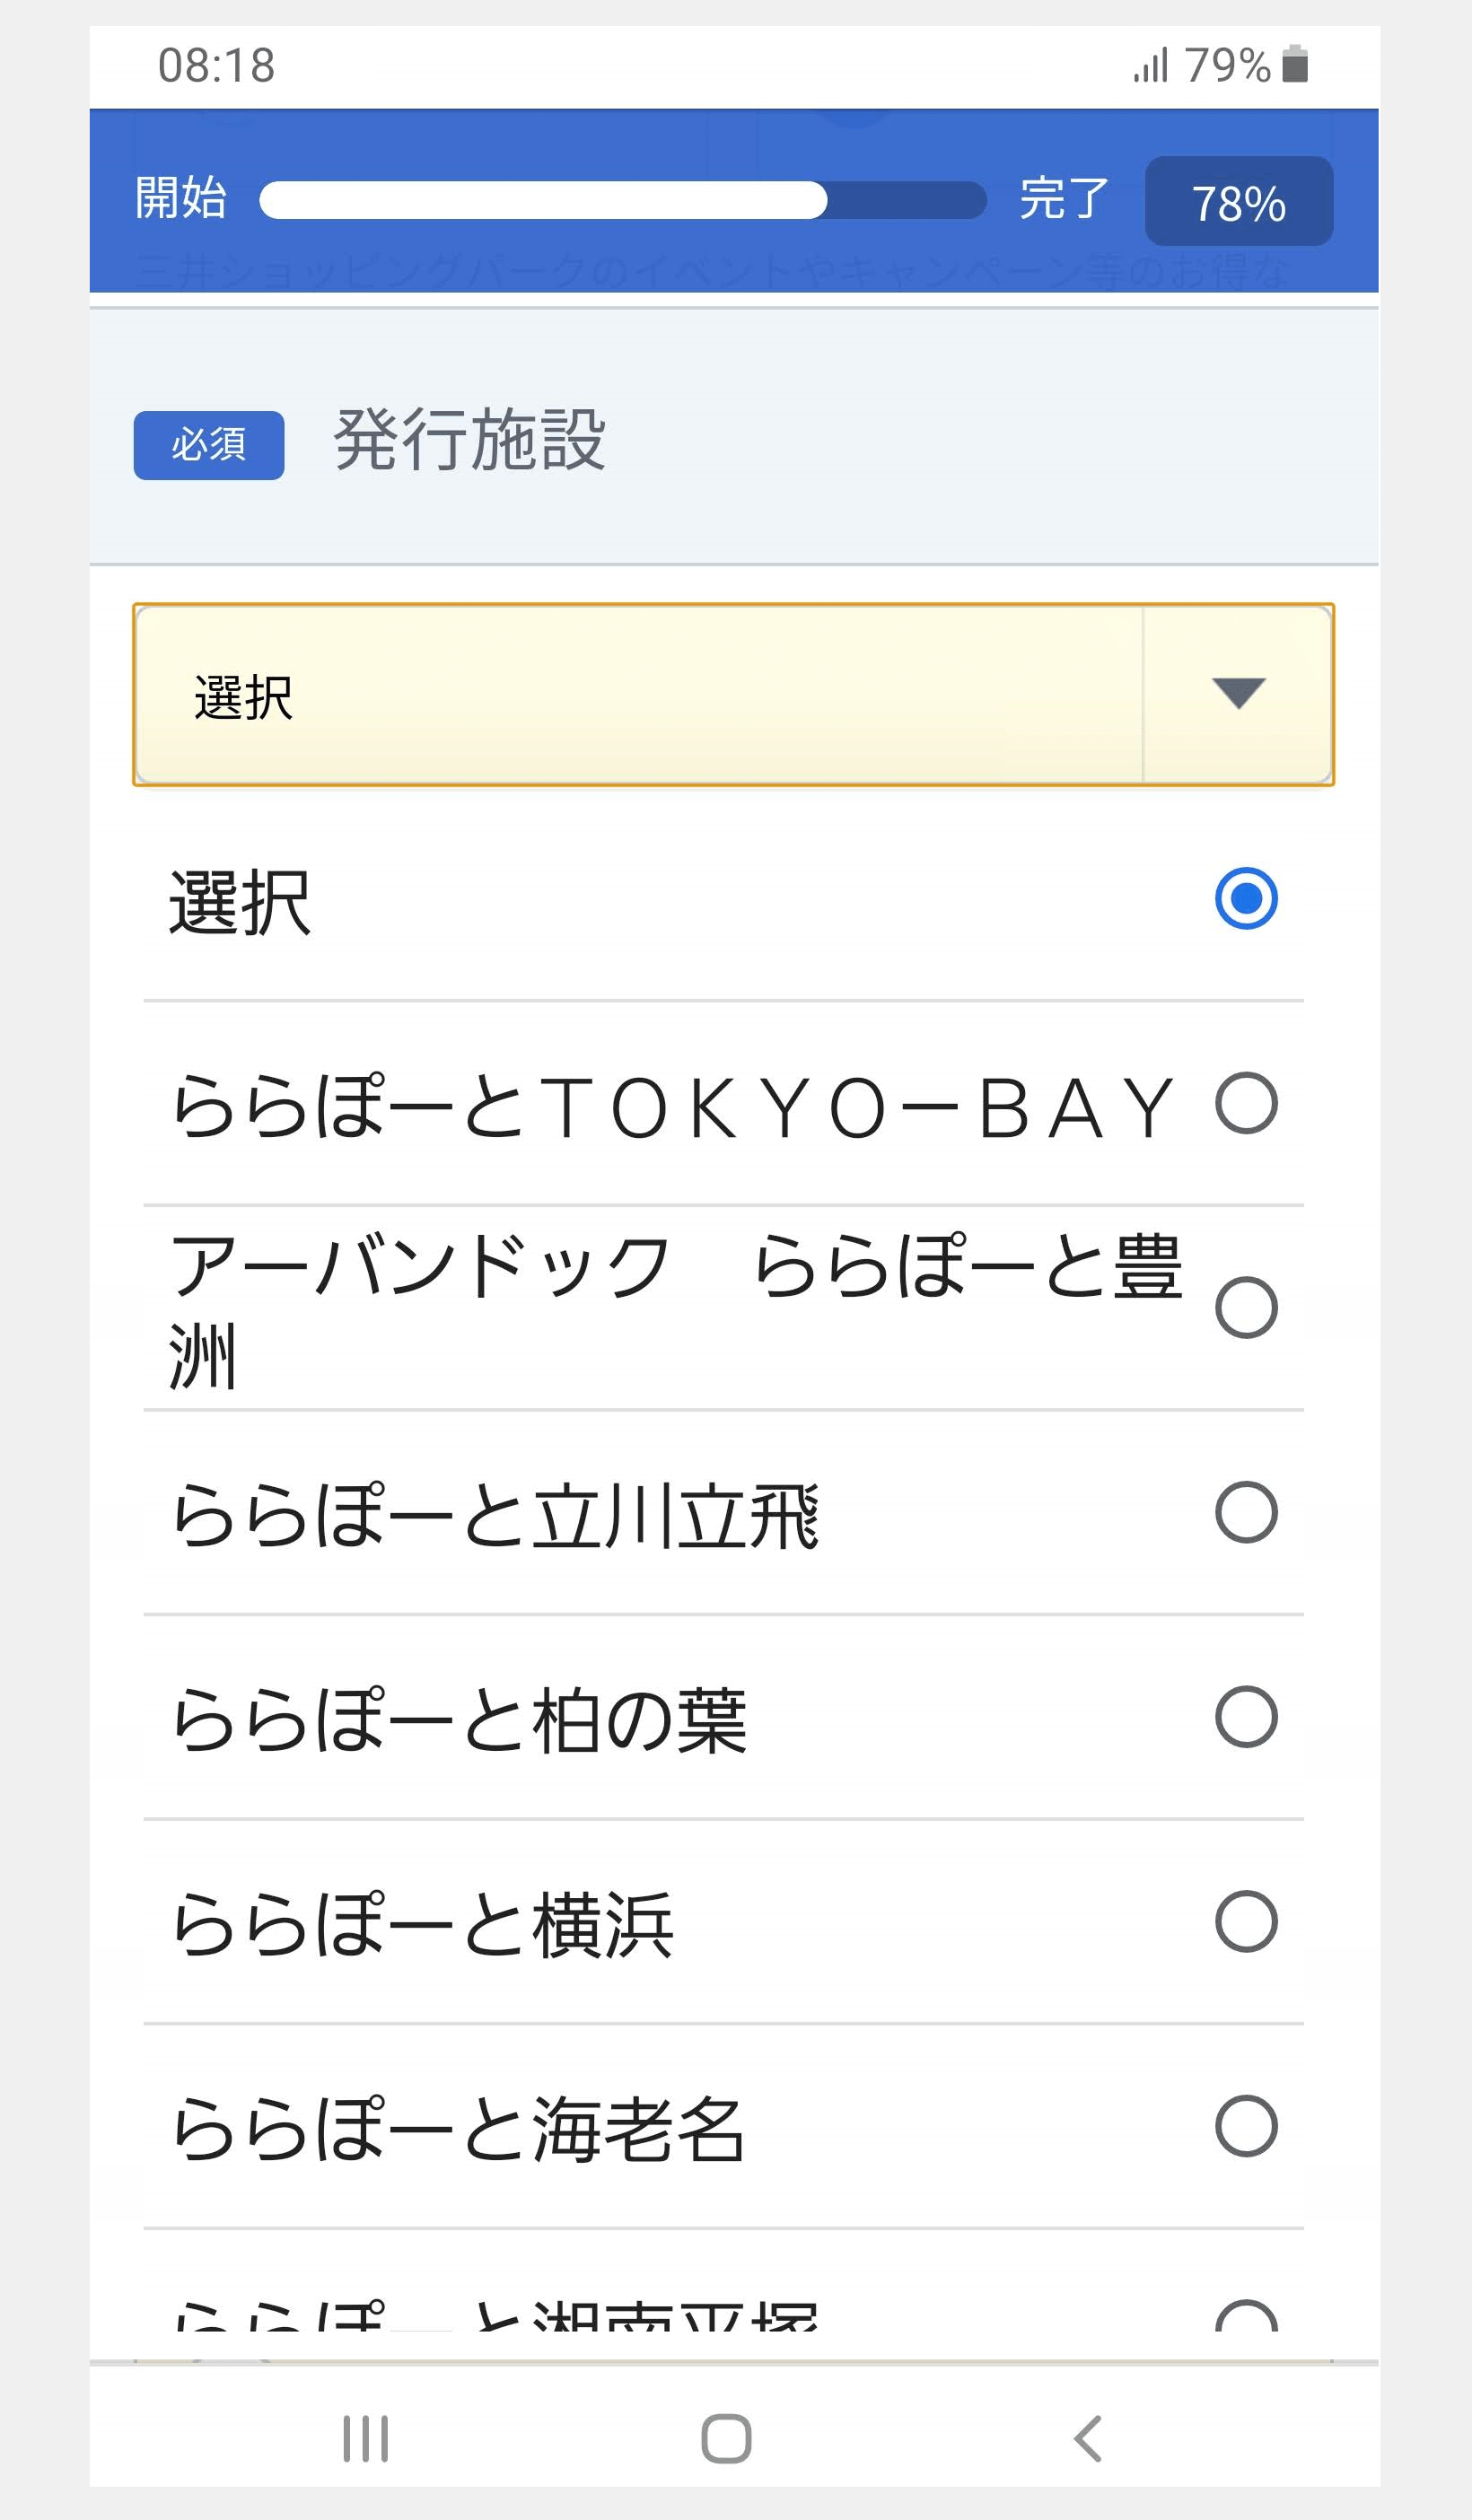 三井ショッピングパークカードお申し込みページの店舗選択画面イメージ